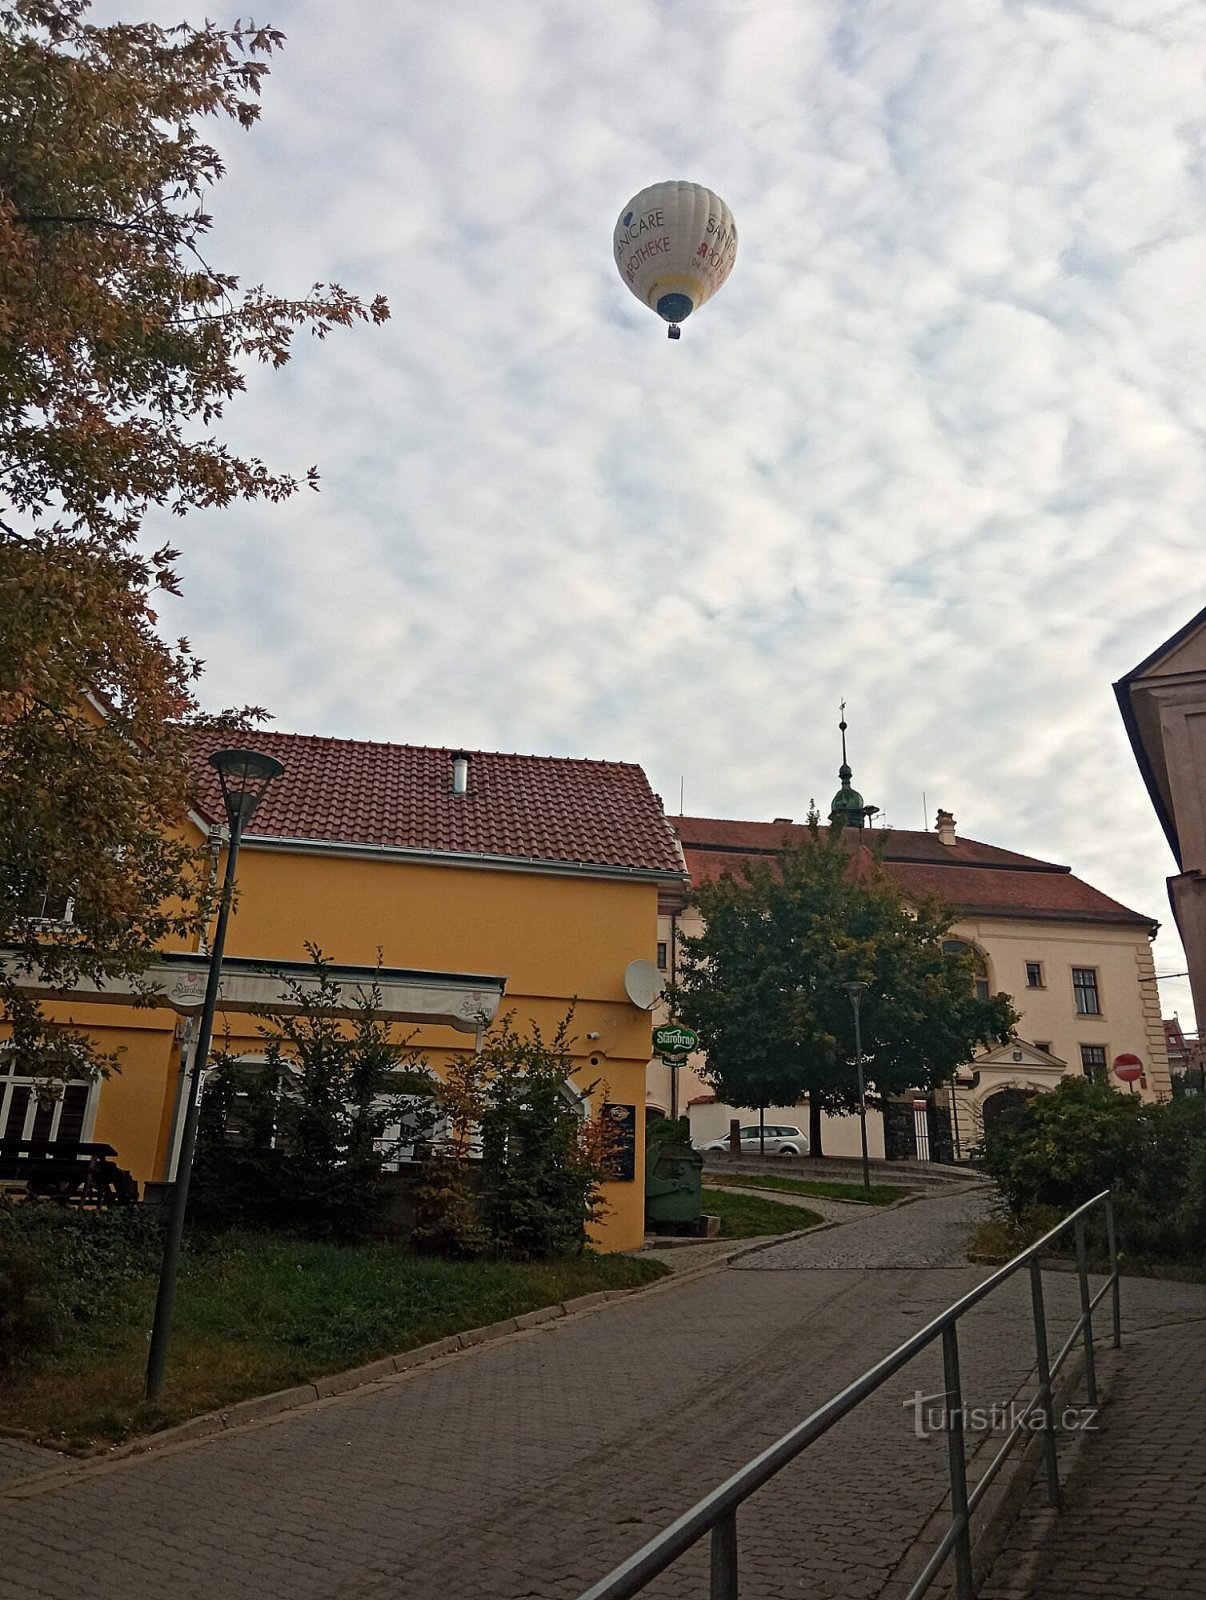 ballon over Tišnov